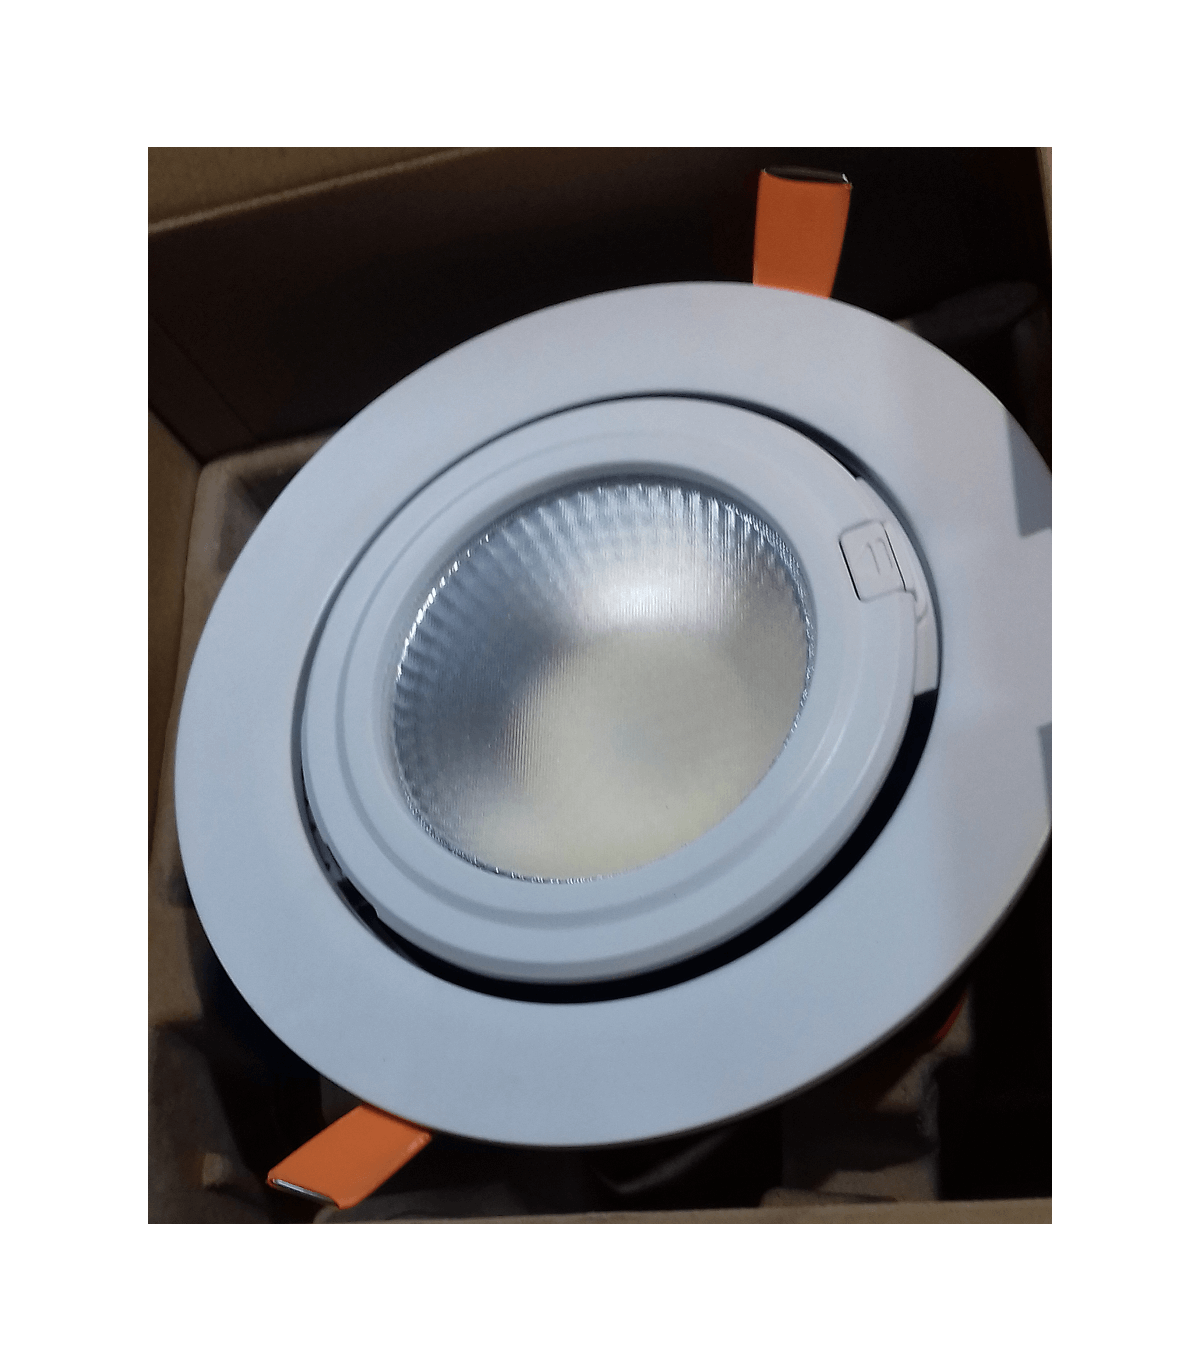 Spot LED étanche argenté 12V, 10W, blanc chaud